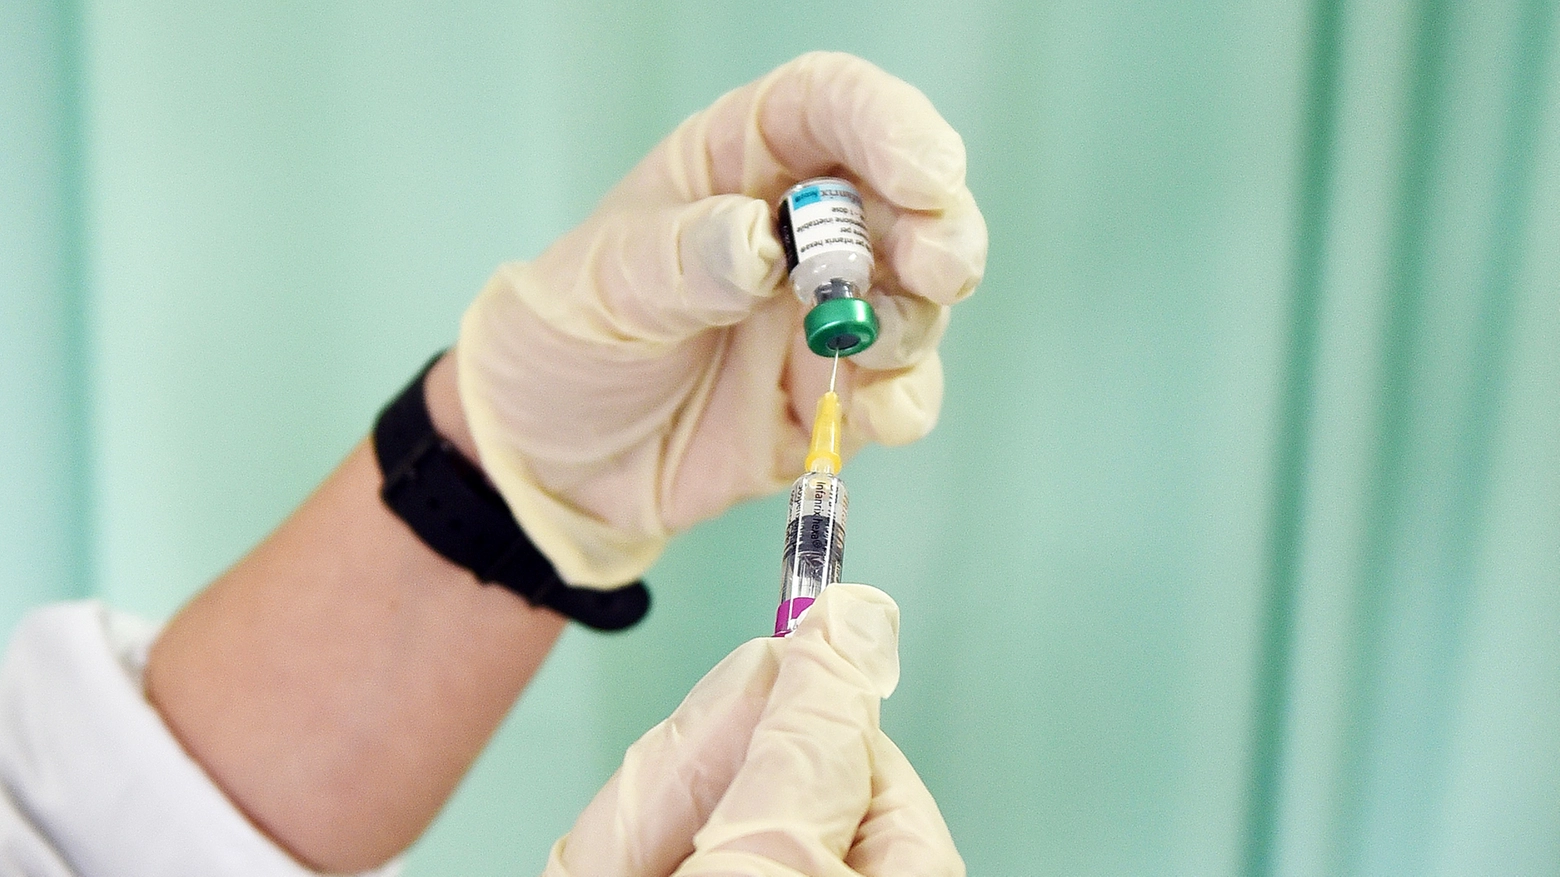 Vaccino Hpv gratis per le donne fino a 26 anni in Emilia Romagna